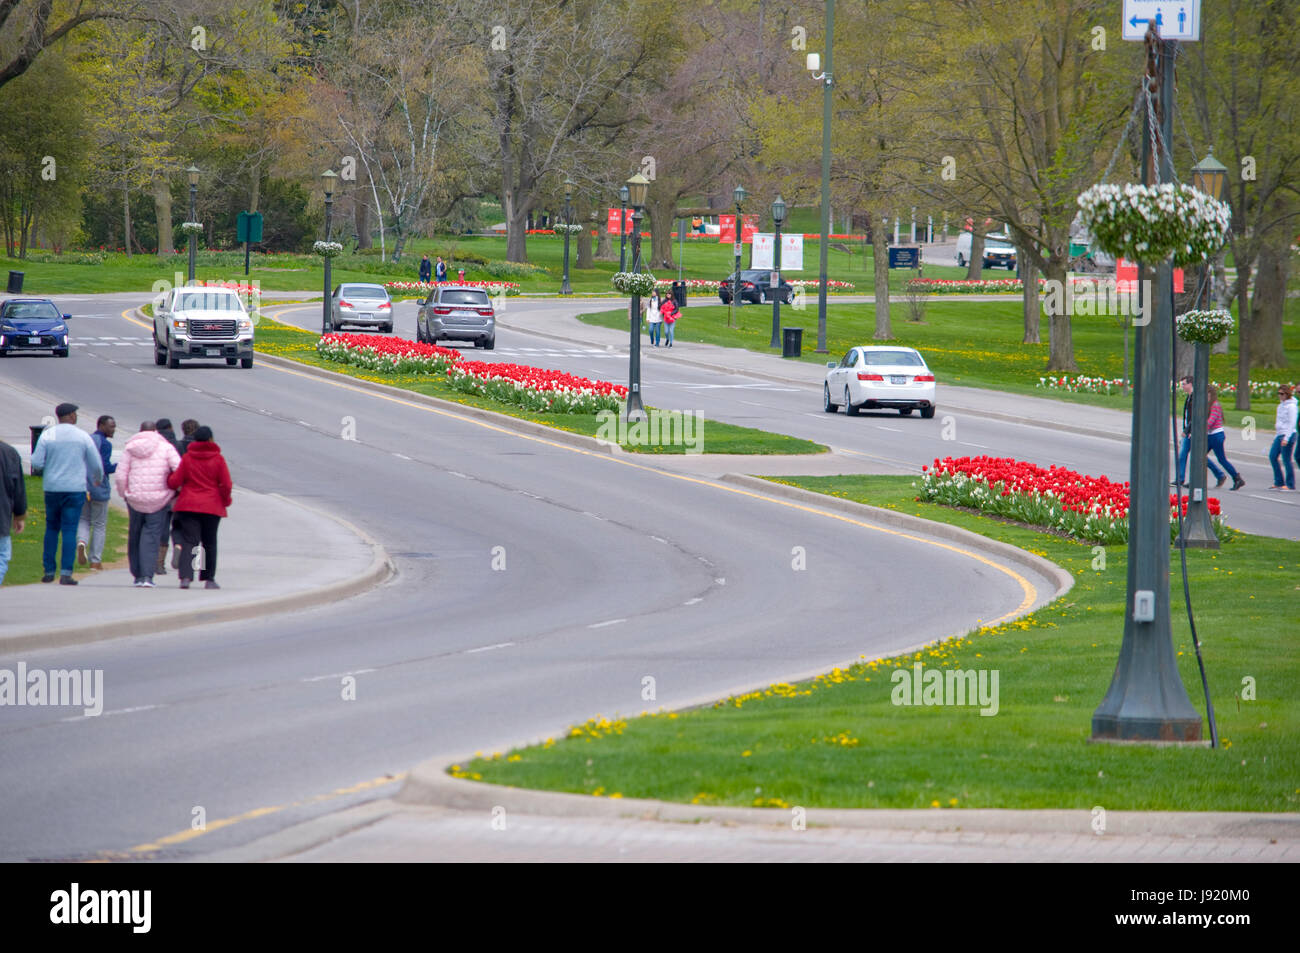 La floración de la tasa anual de tulipanes y narcisos en Niagara Falls, Ontario, Canadá Foto de stock